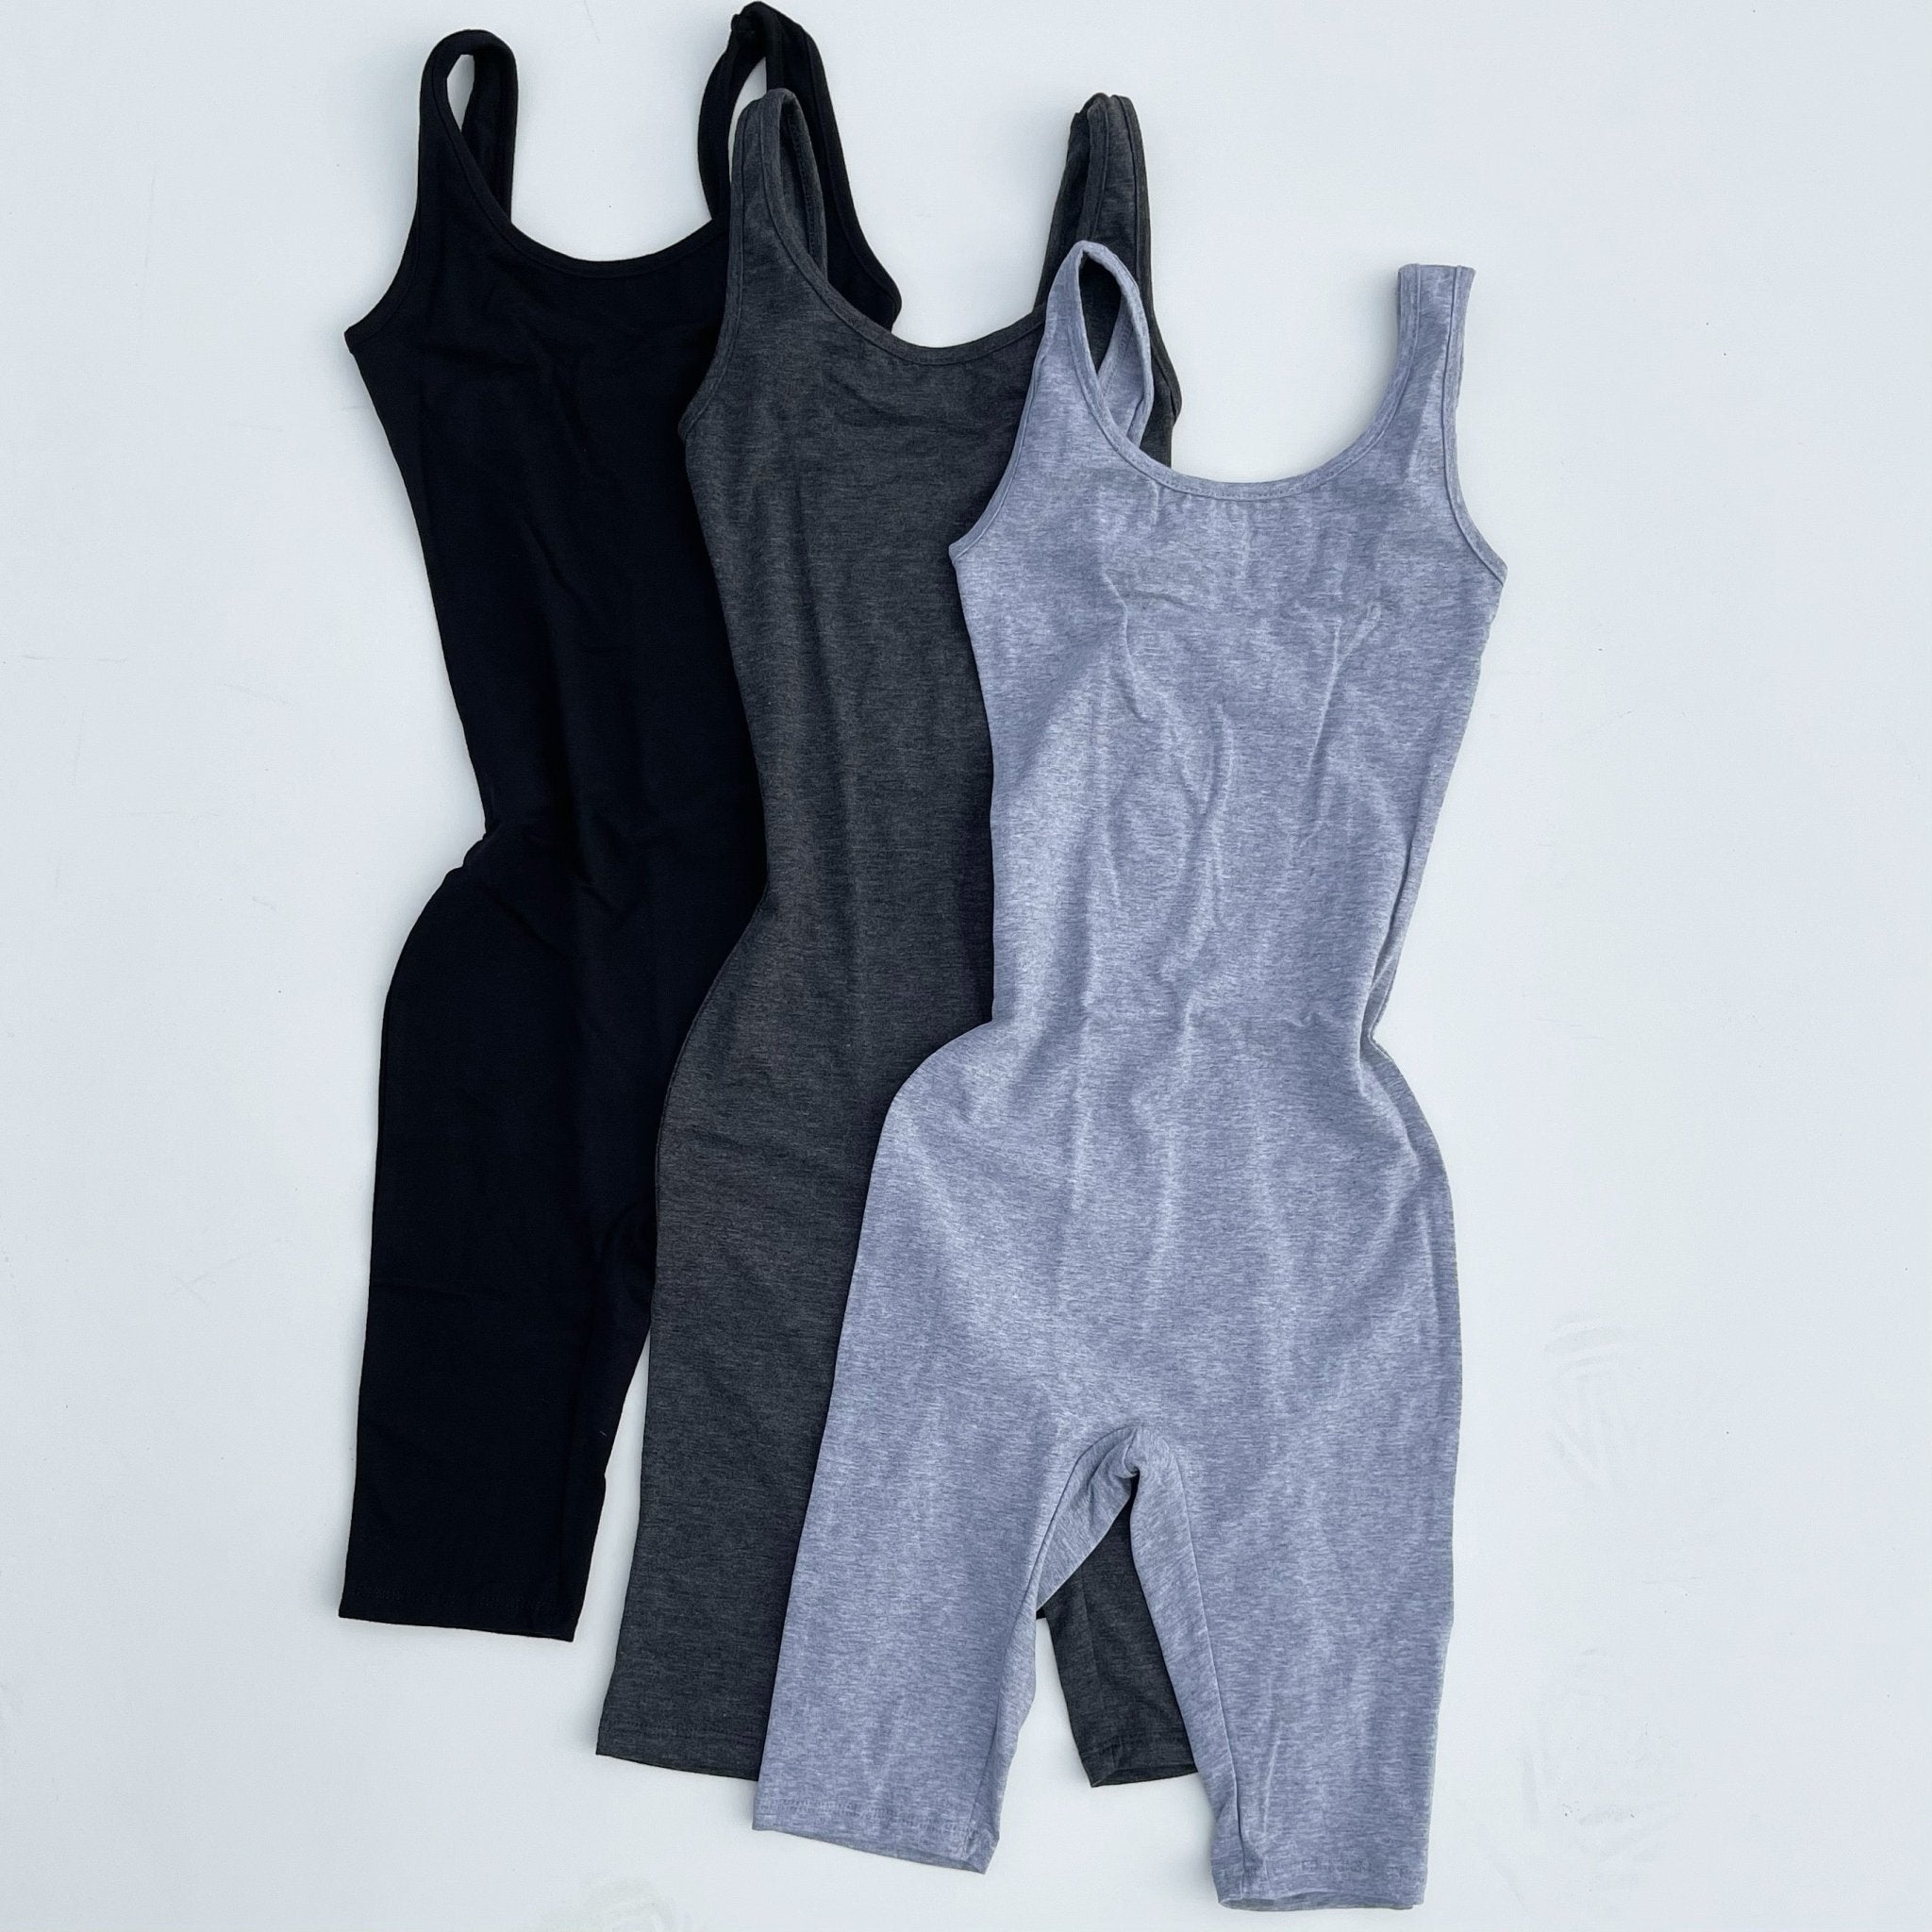 Buy EIO® Newborn Baby Boy Girl 100% Cotton Short Sleeve Romper Jumpsuit  Bodysuit (Pink, 0-3 months) at Amazon.in